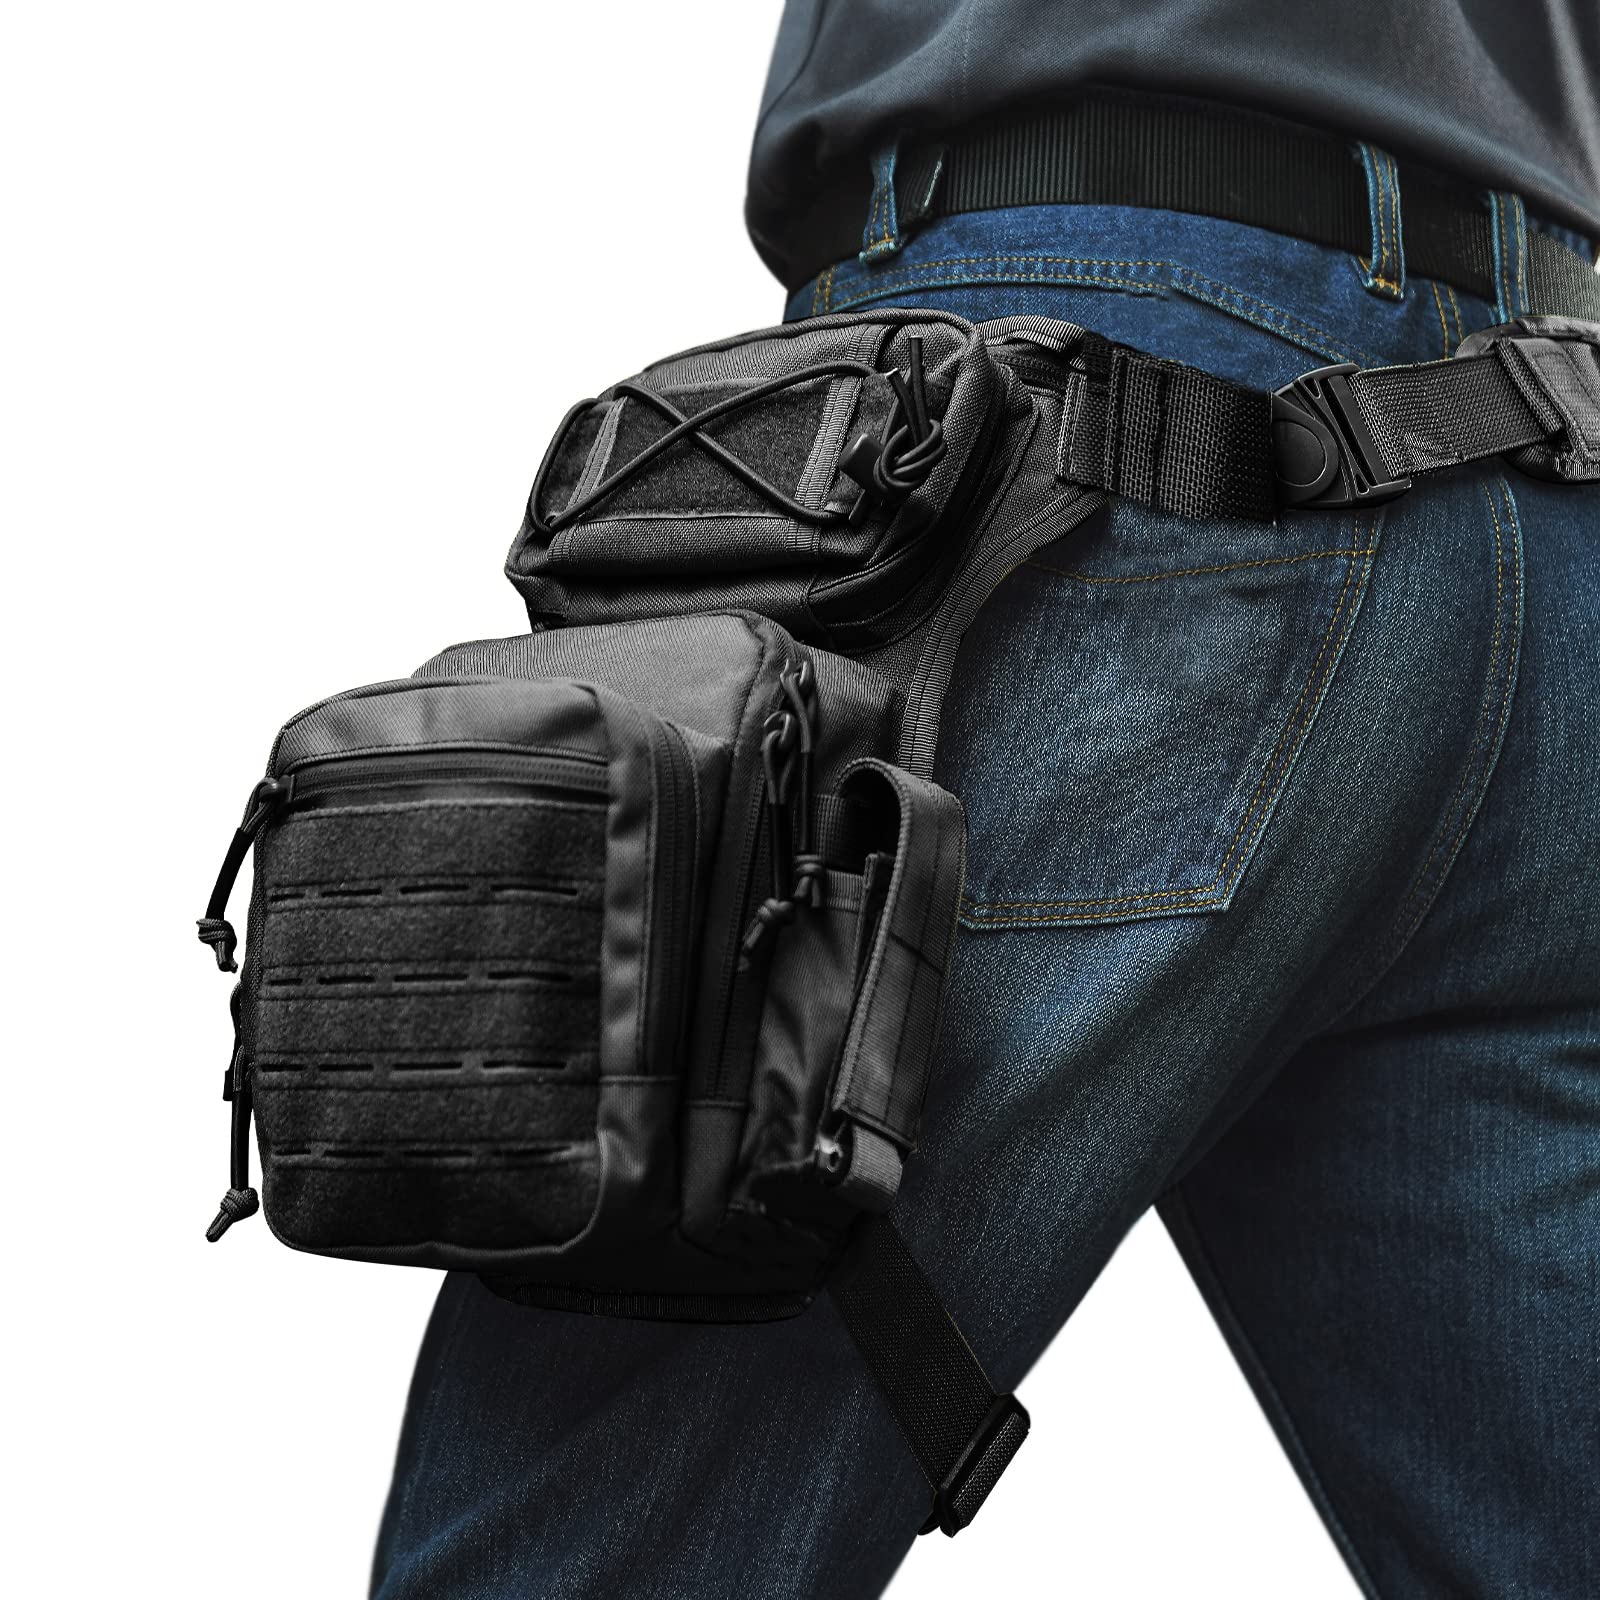 I-Tactical Drop Leg Pouch Bag 1